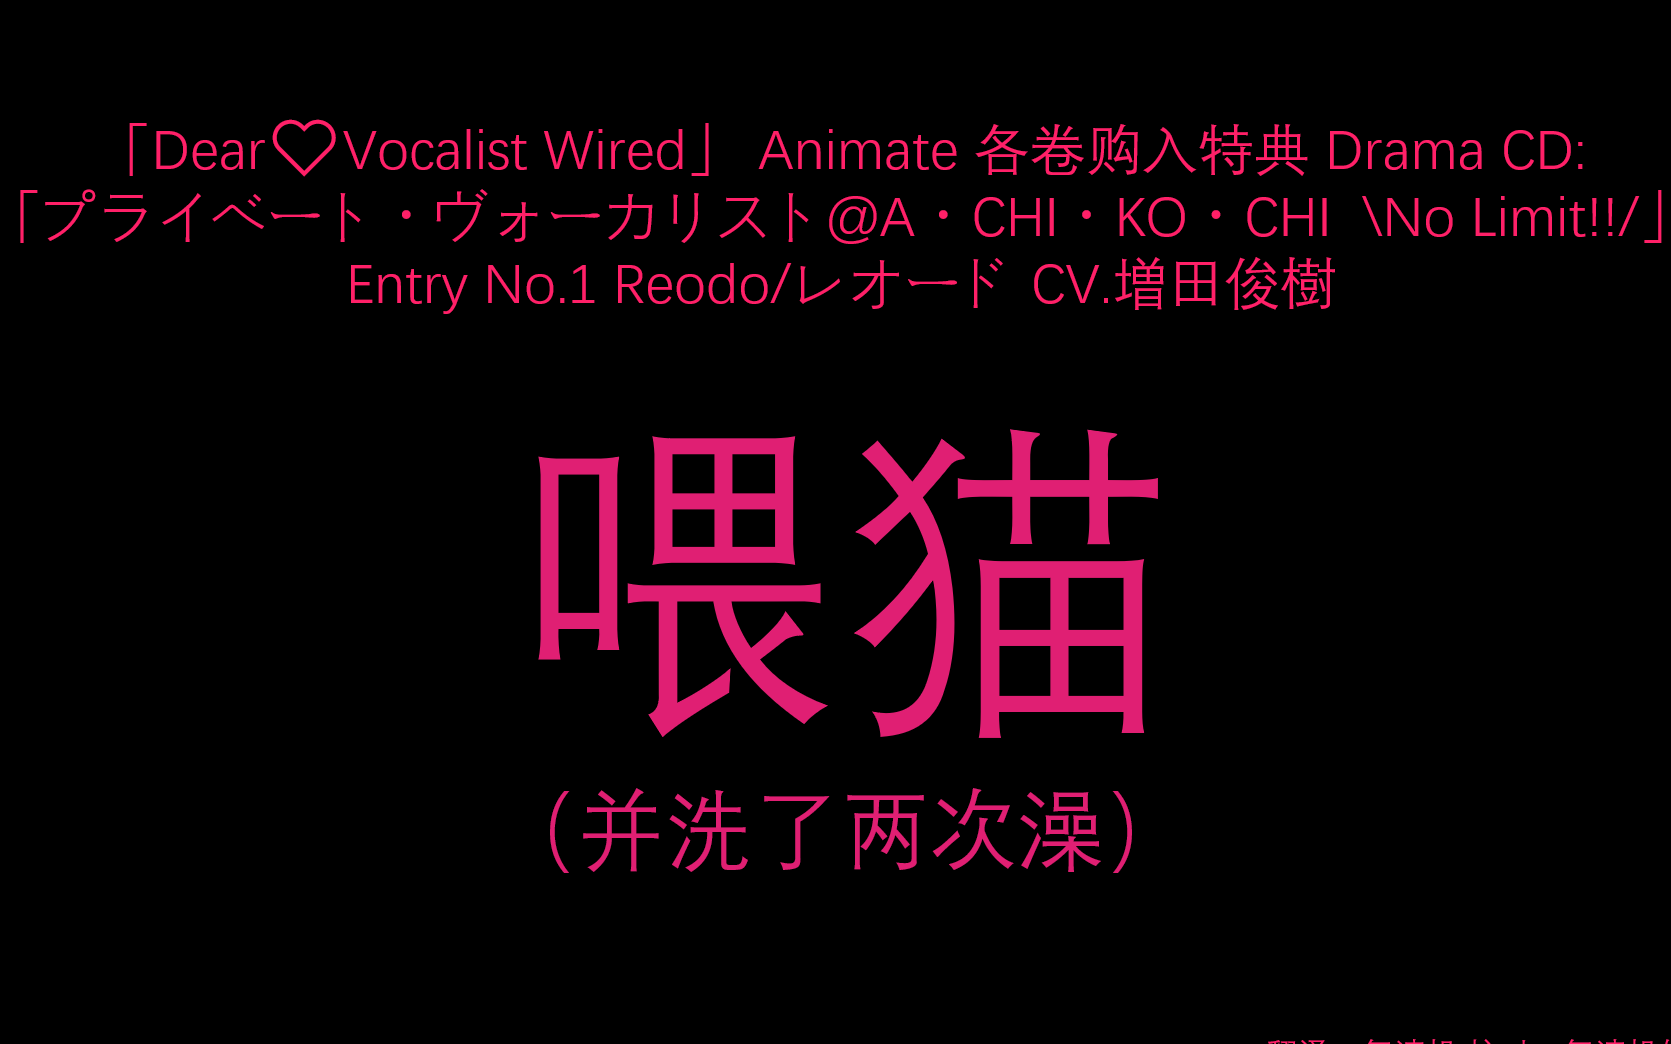 【字幕】【Dear Vocalist Wired】【A店特典Drama CD】Reodo/レオード CV.増田俊樹